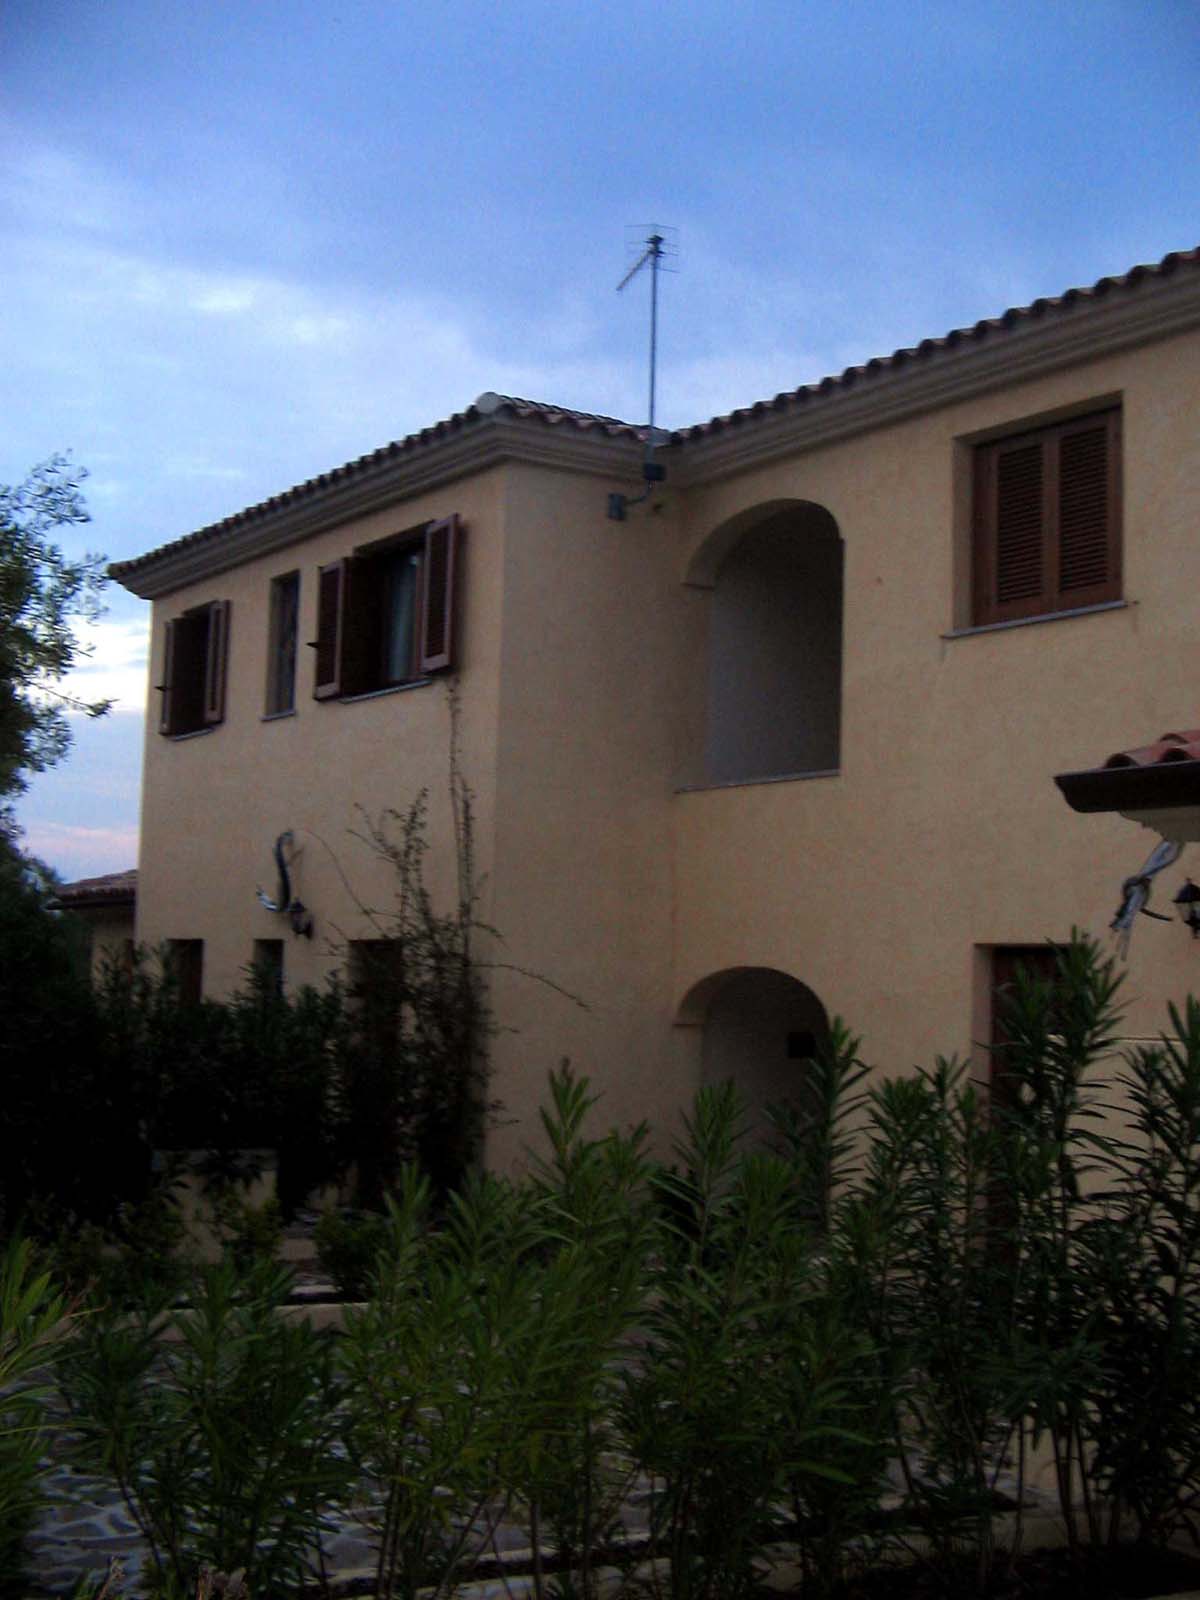 case vicino - Appartamento vacanze al mare vicino Olbia San Teodoro casa in Sardegna annunci affitto estate - Fotografie case in zona